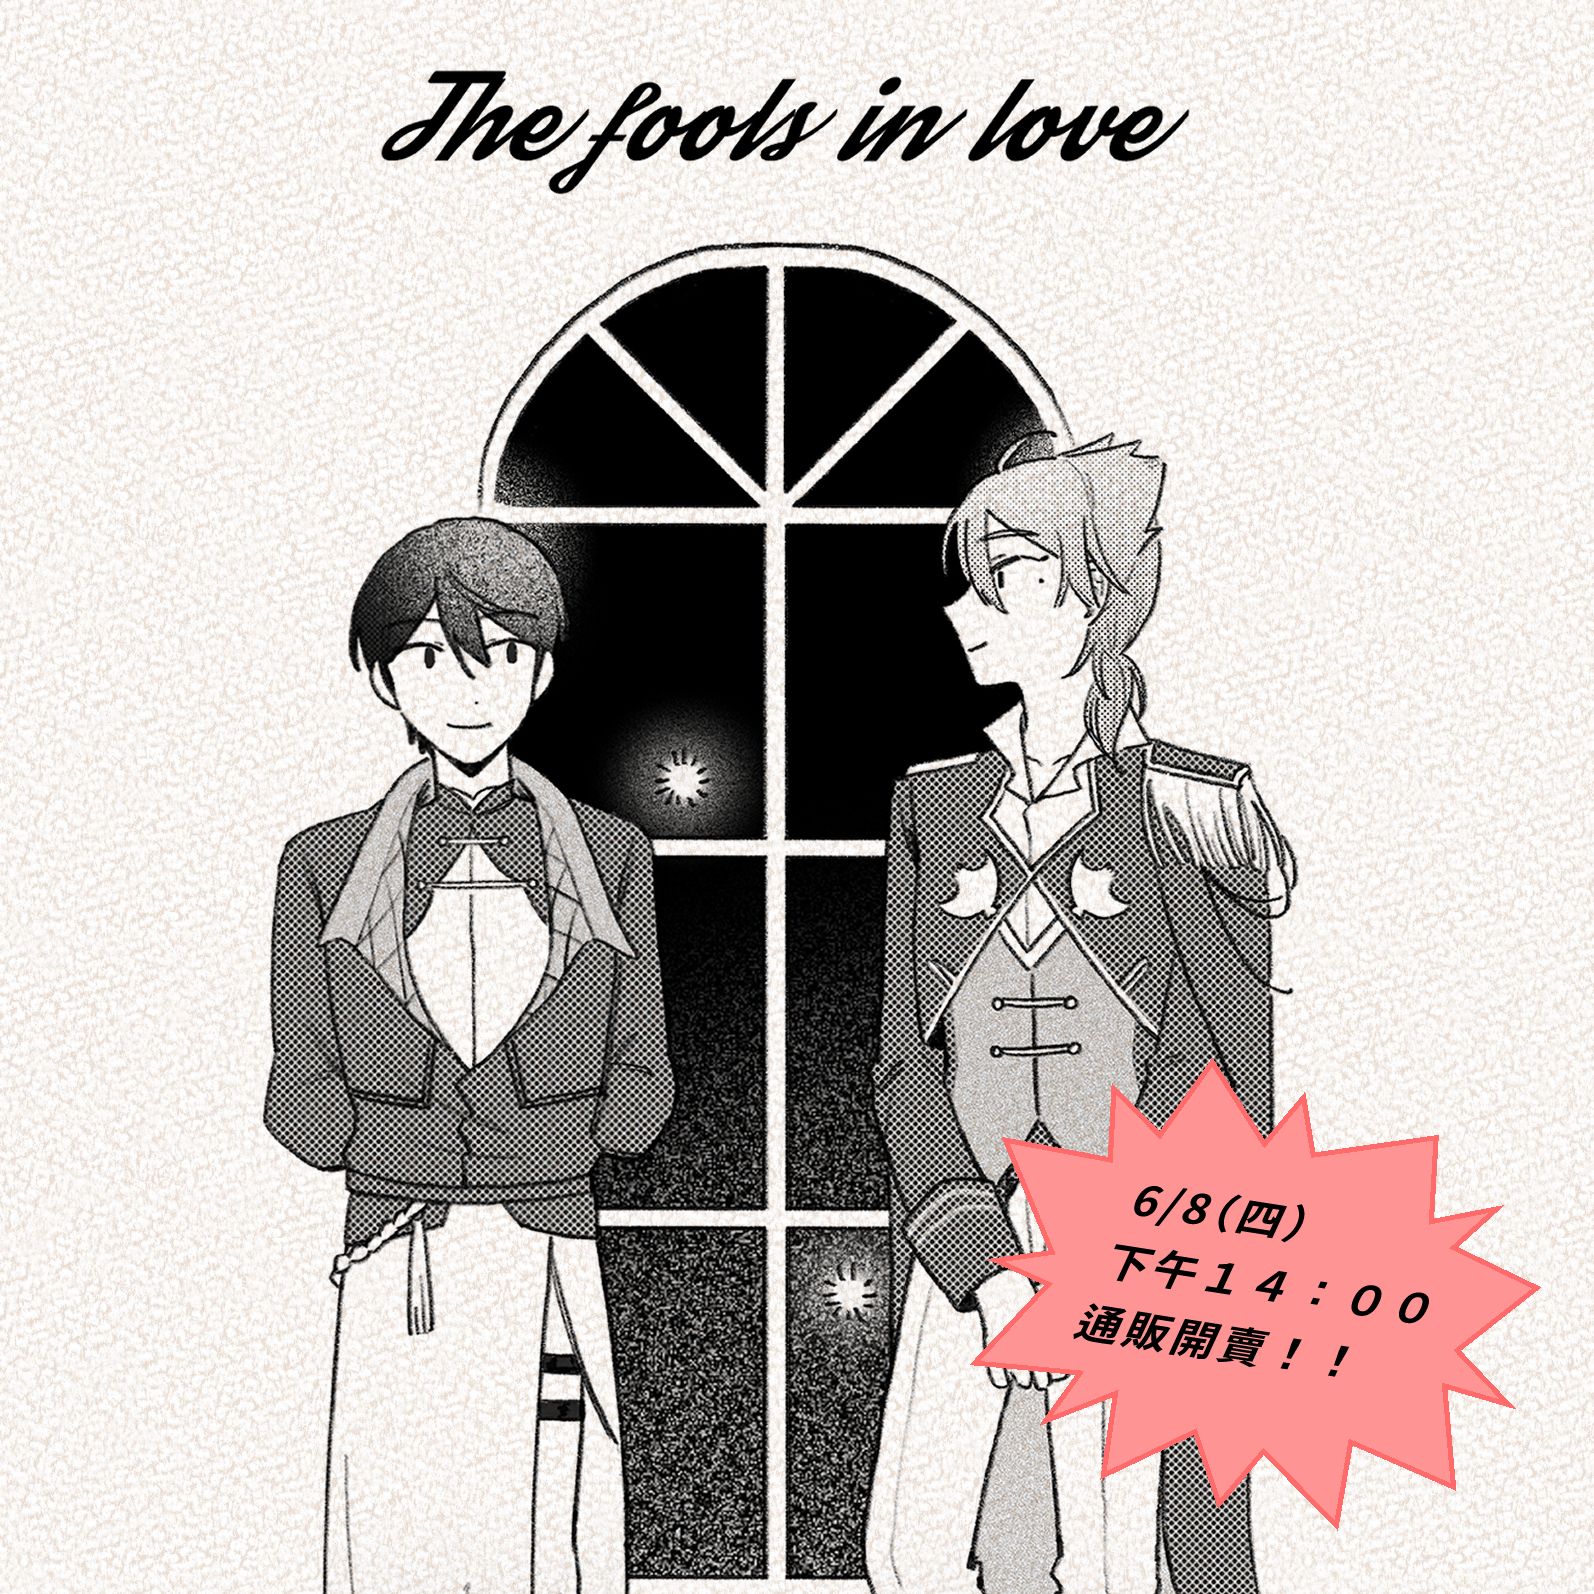 ｛The fools in love｝ gktu 王隨本